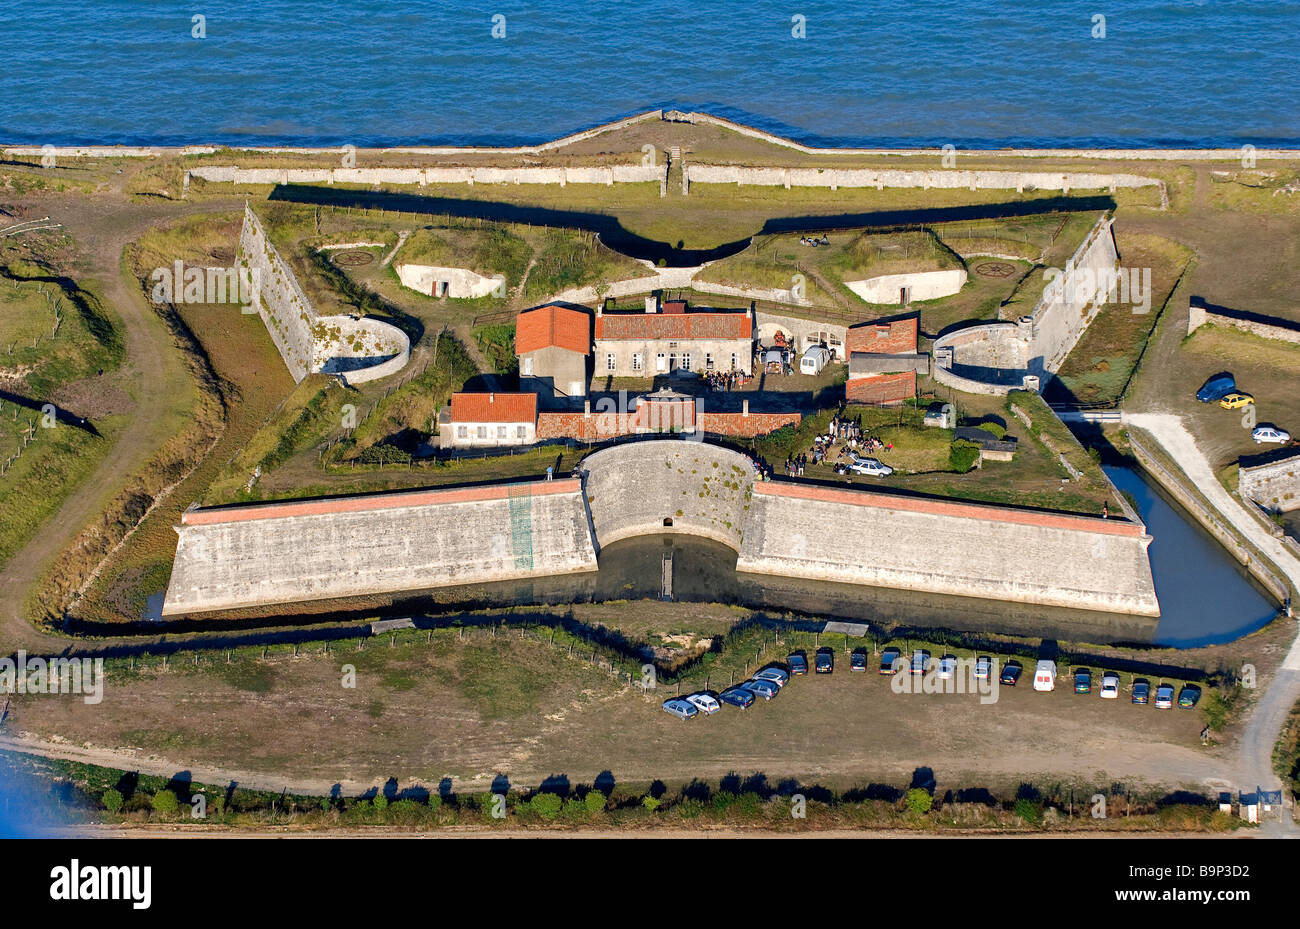 France, Charente Maritime, Ile de Re, Fort de la Pree rebuilt by Vauban in the South of La Flotte en Re (aerial view) Stock Photo